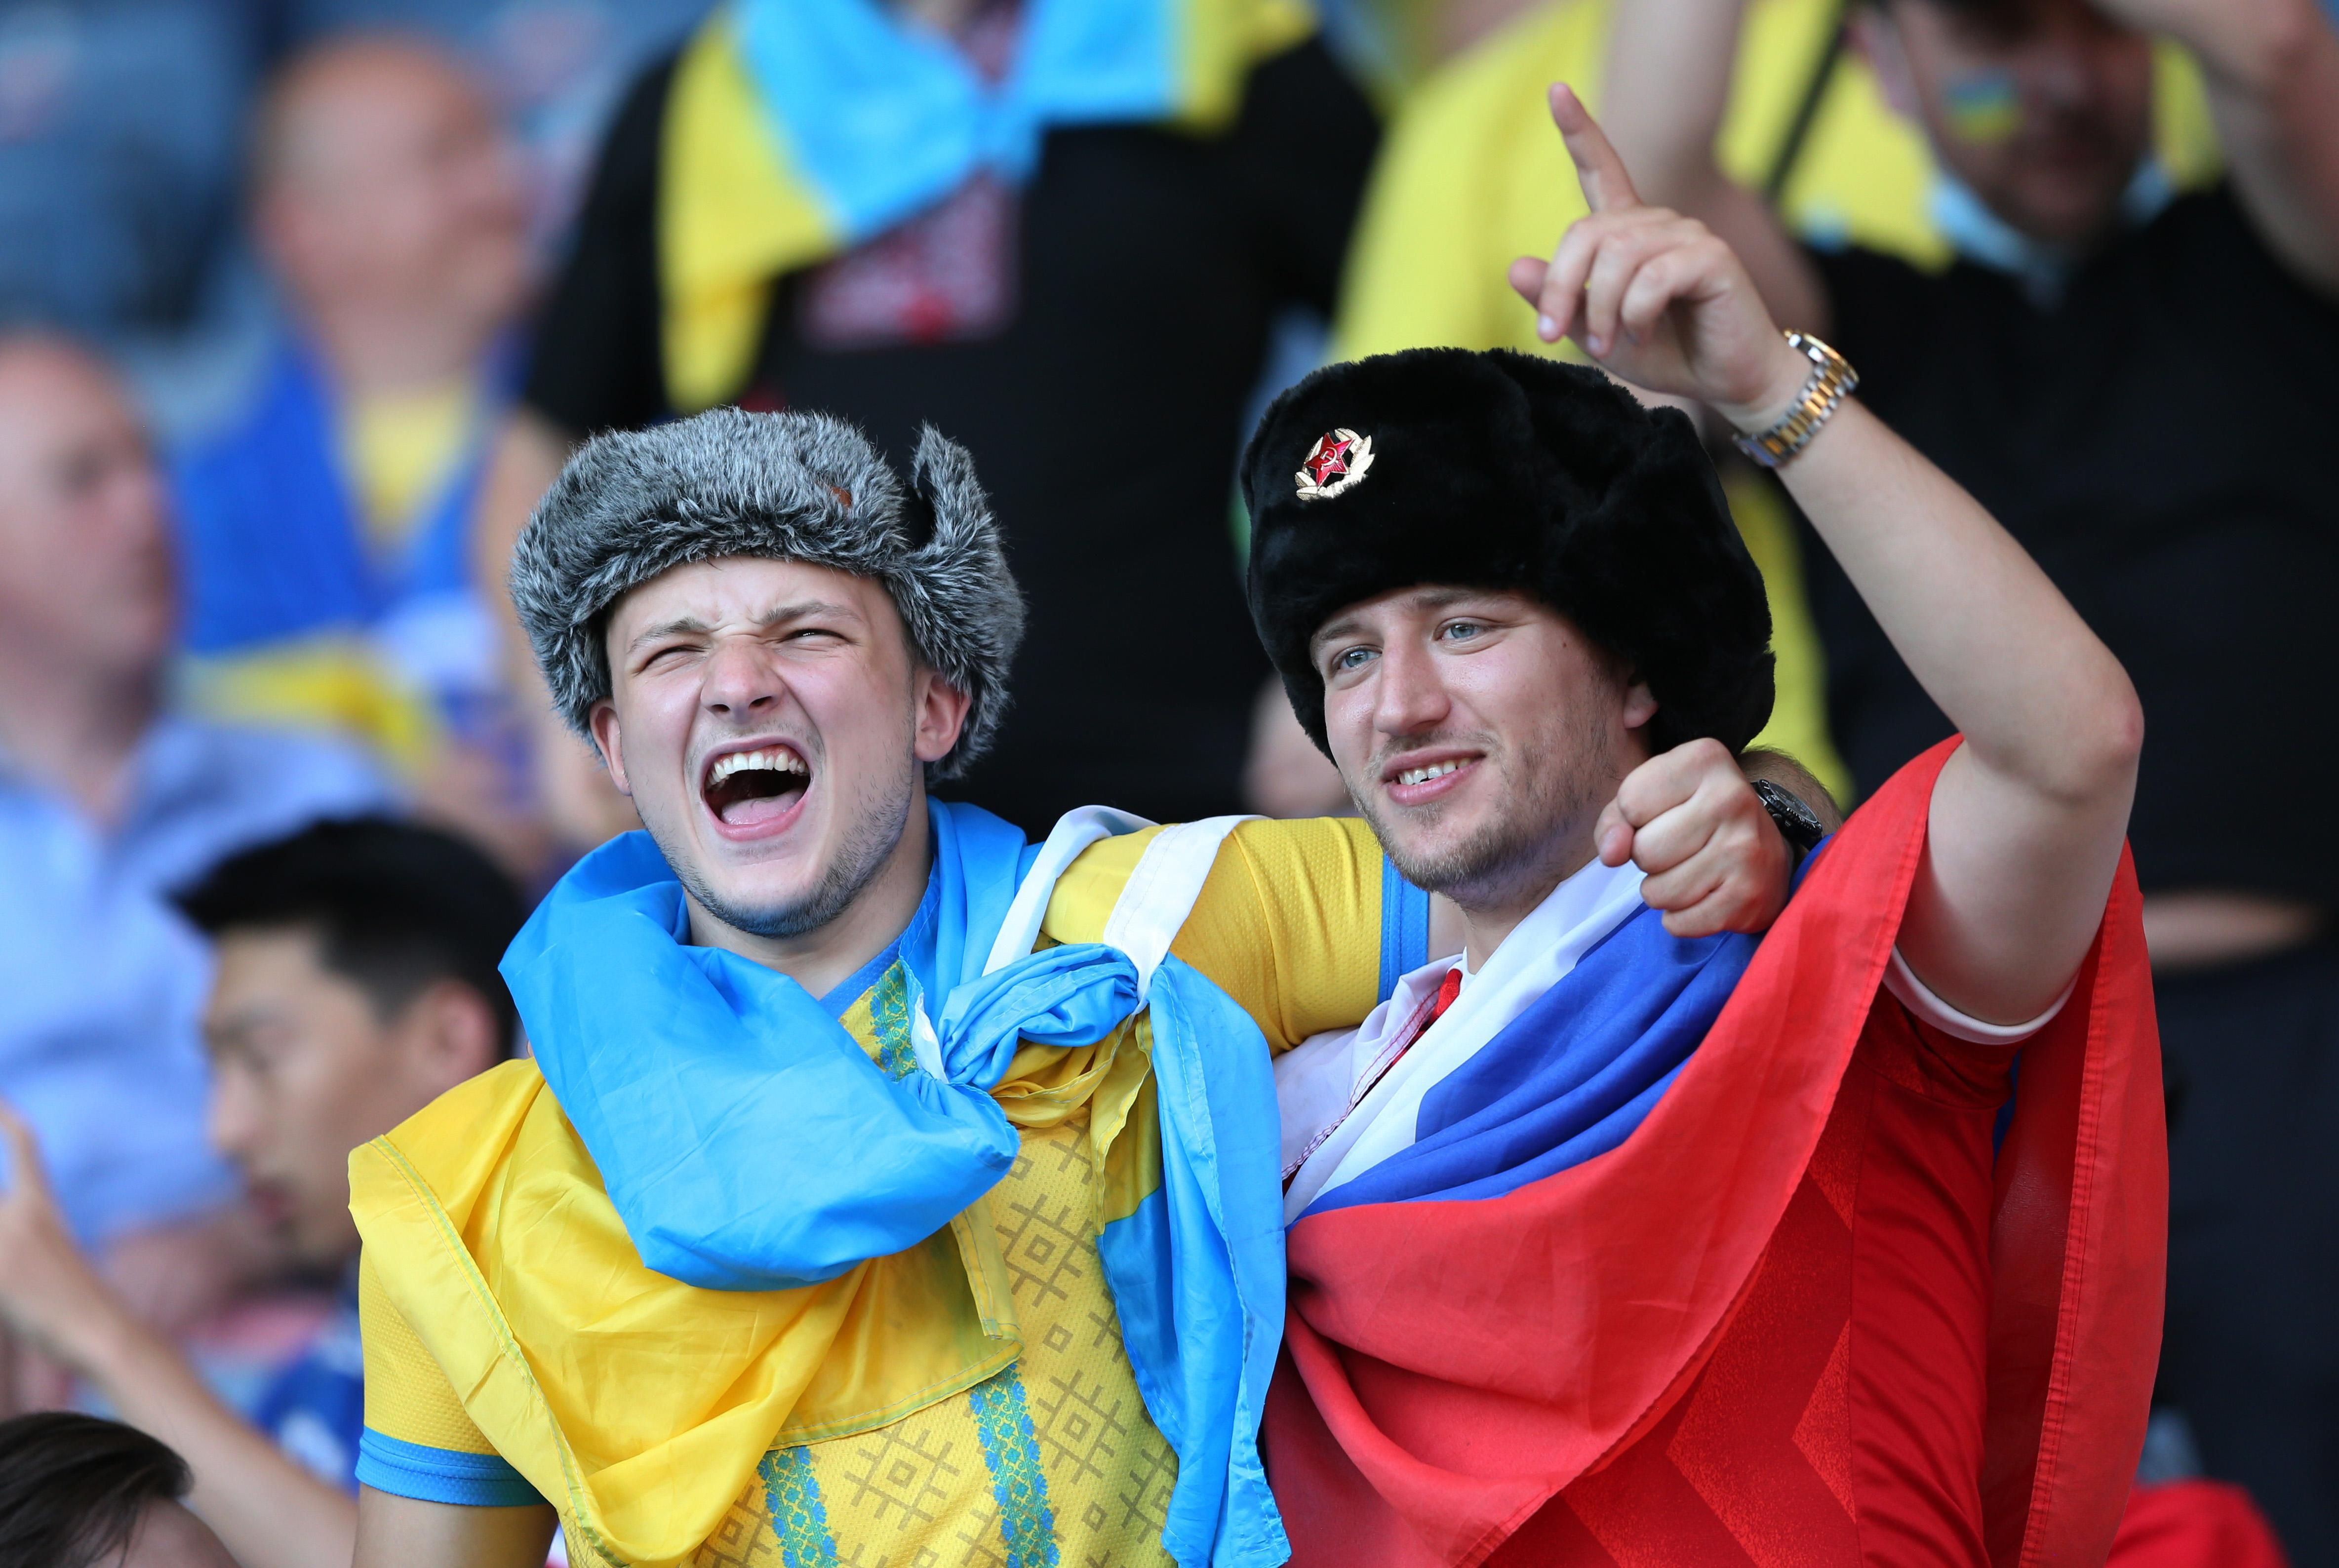 Російський фанат з триколором з'явився на трибуні України - фото